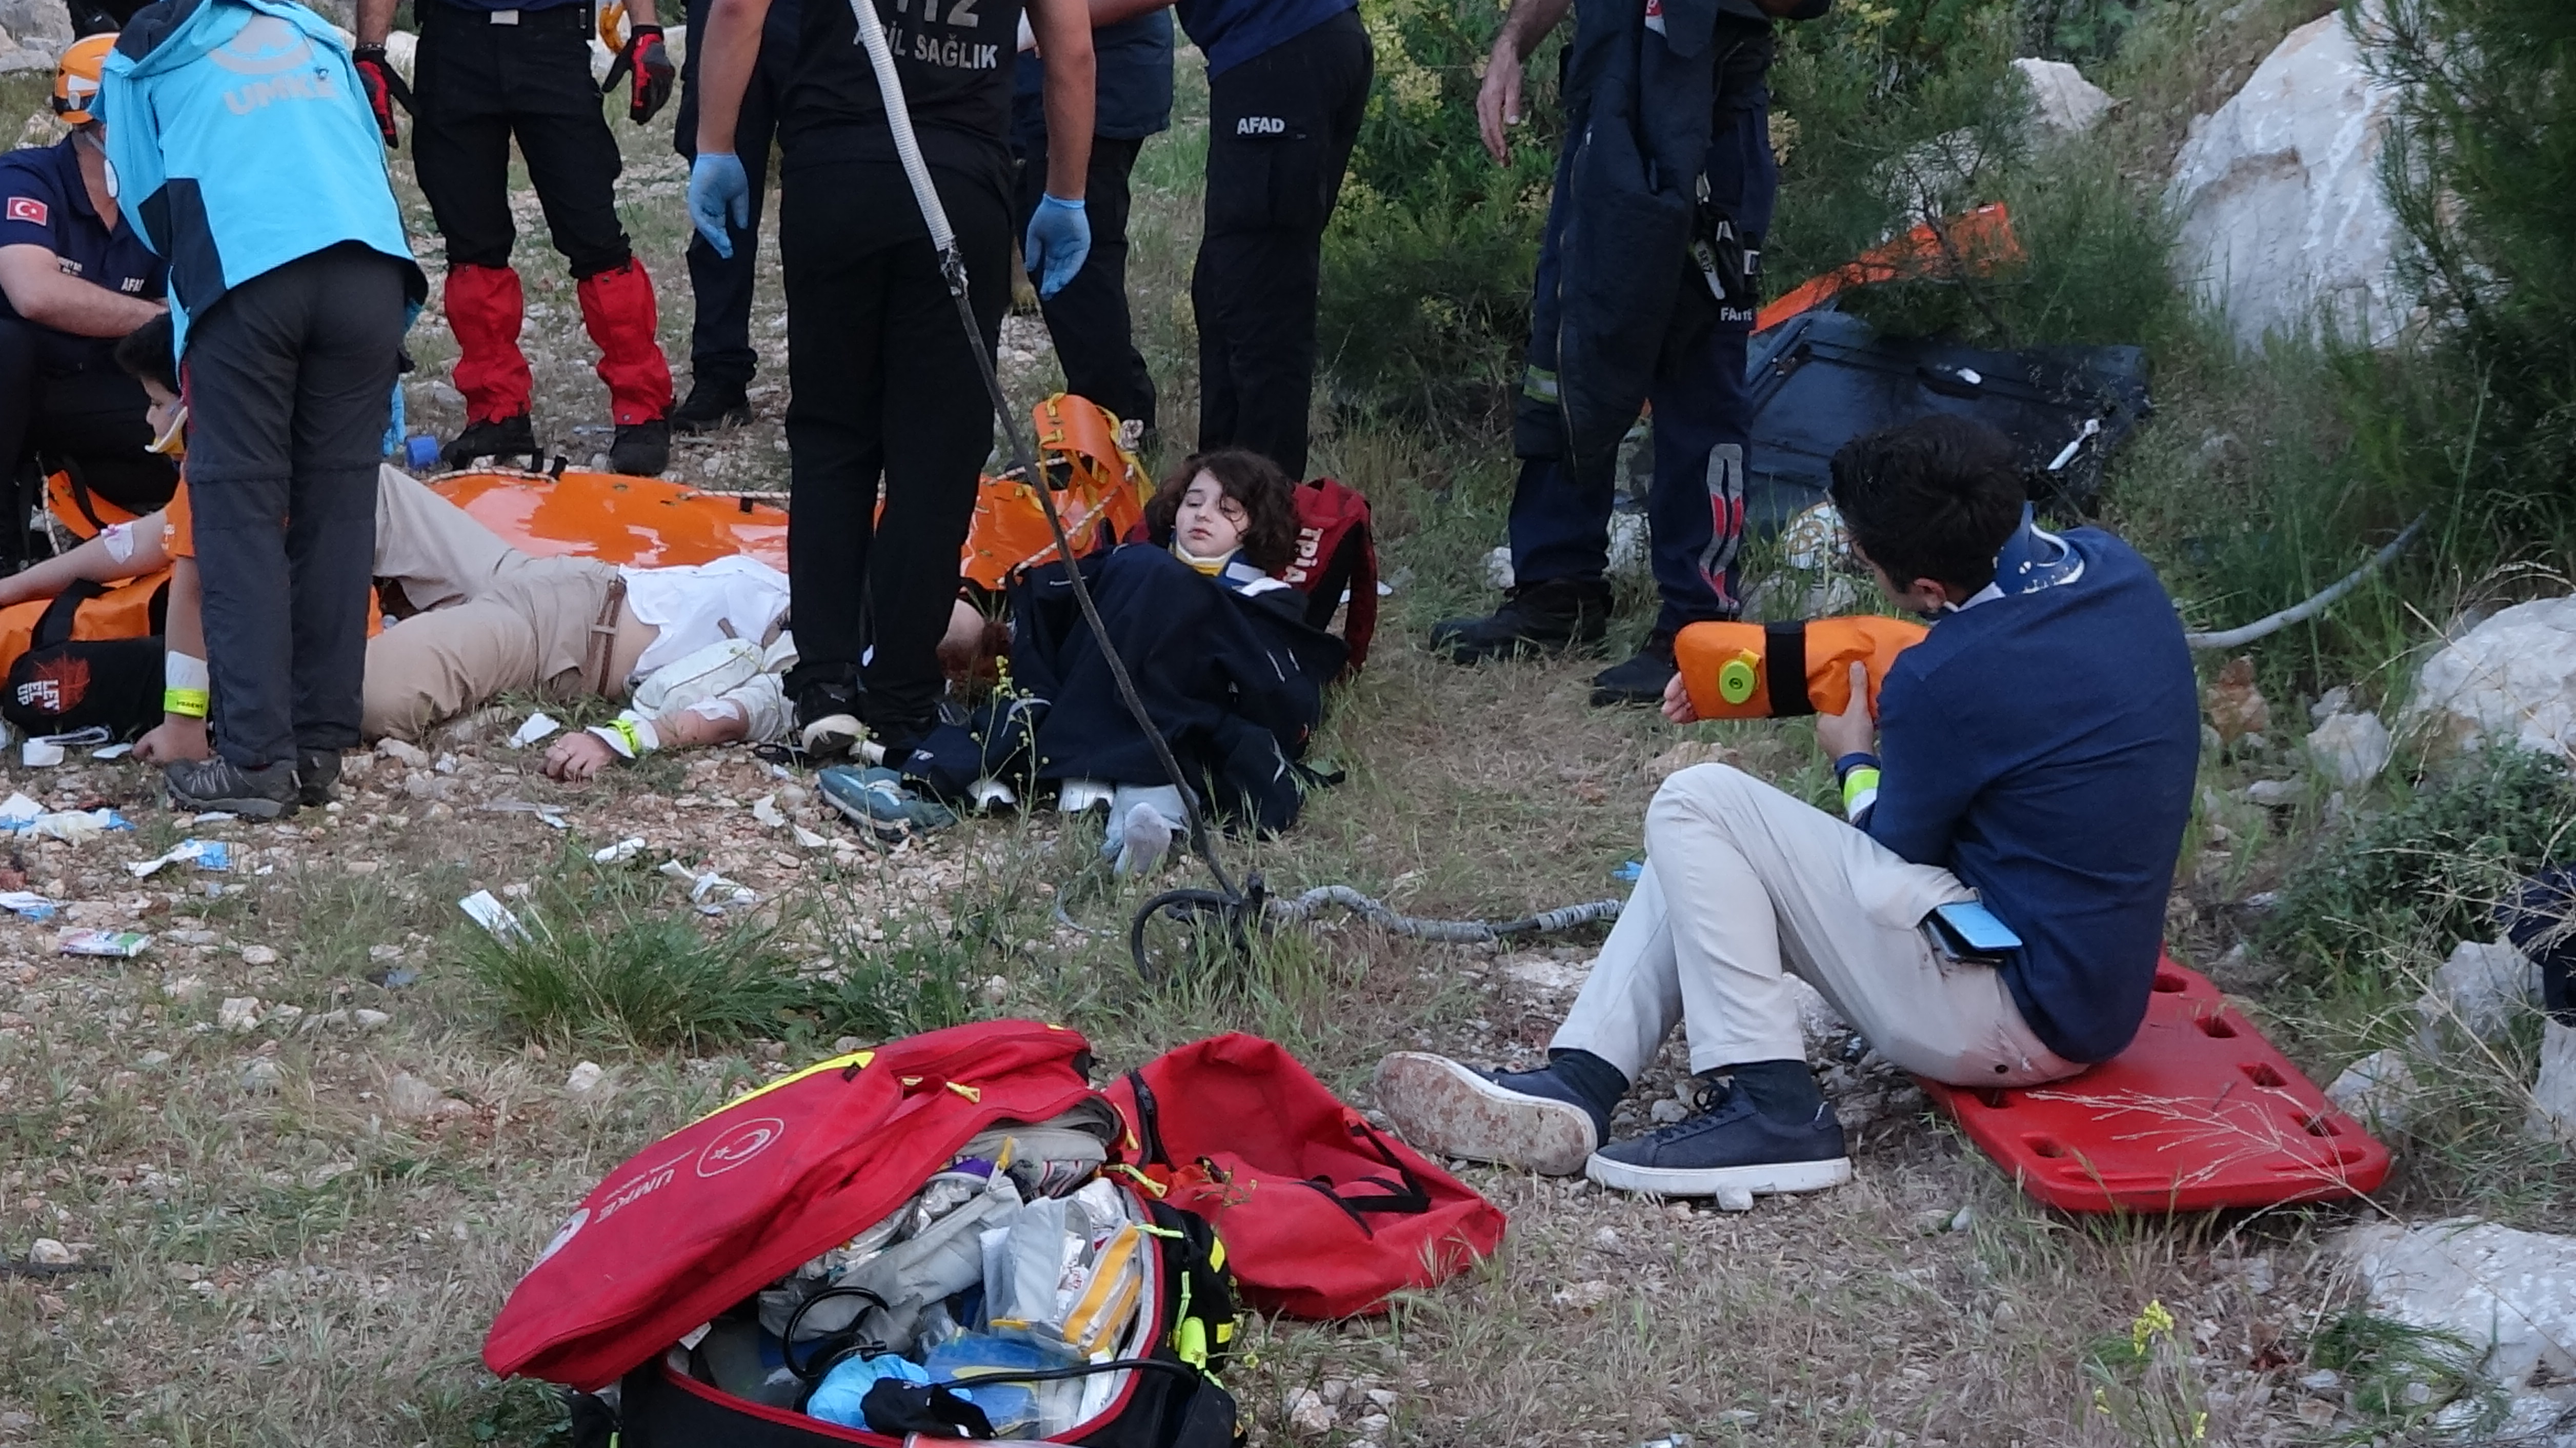 Kazada hayatını kaybeden kişinin Memiş Gümüş (54) olduğu belirlenirken, Özlem Şahin, Kaan Akgün, Fatih Gümüş, Keziban Çapar Gümüş, Lütfullah Kerim Gümüş, Herdem Eyüpoğlu ve Akmaral Abdyldaeva yaralandı.  Sahil Güvenlik Komutanlığına bağlı helikopterle olay yerinden alınarak, hastanelere götürüldü. Teleferik kabinlerinde mahsur kalan 184 kişi için kurtarma çalışmaları başlatıldı. 